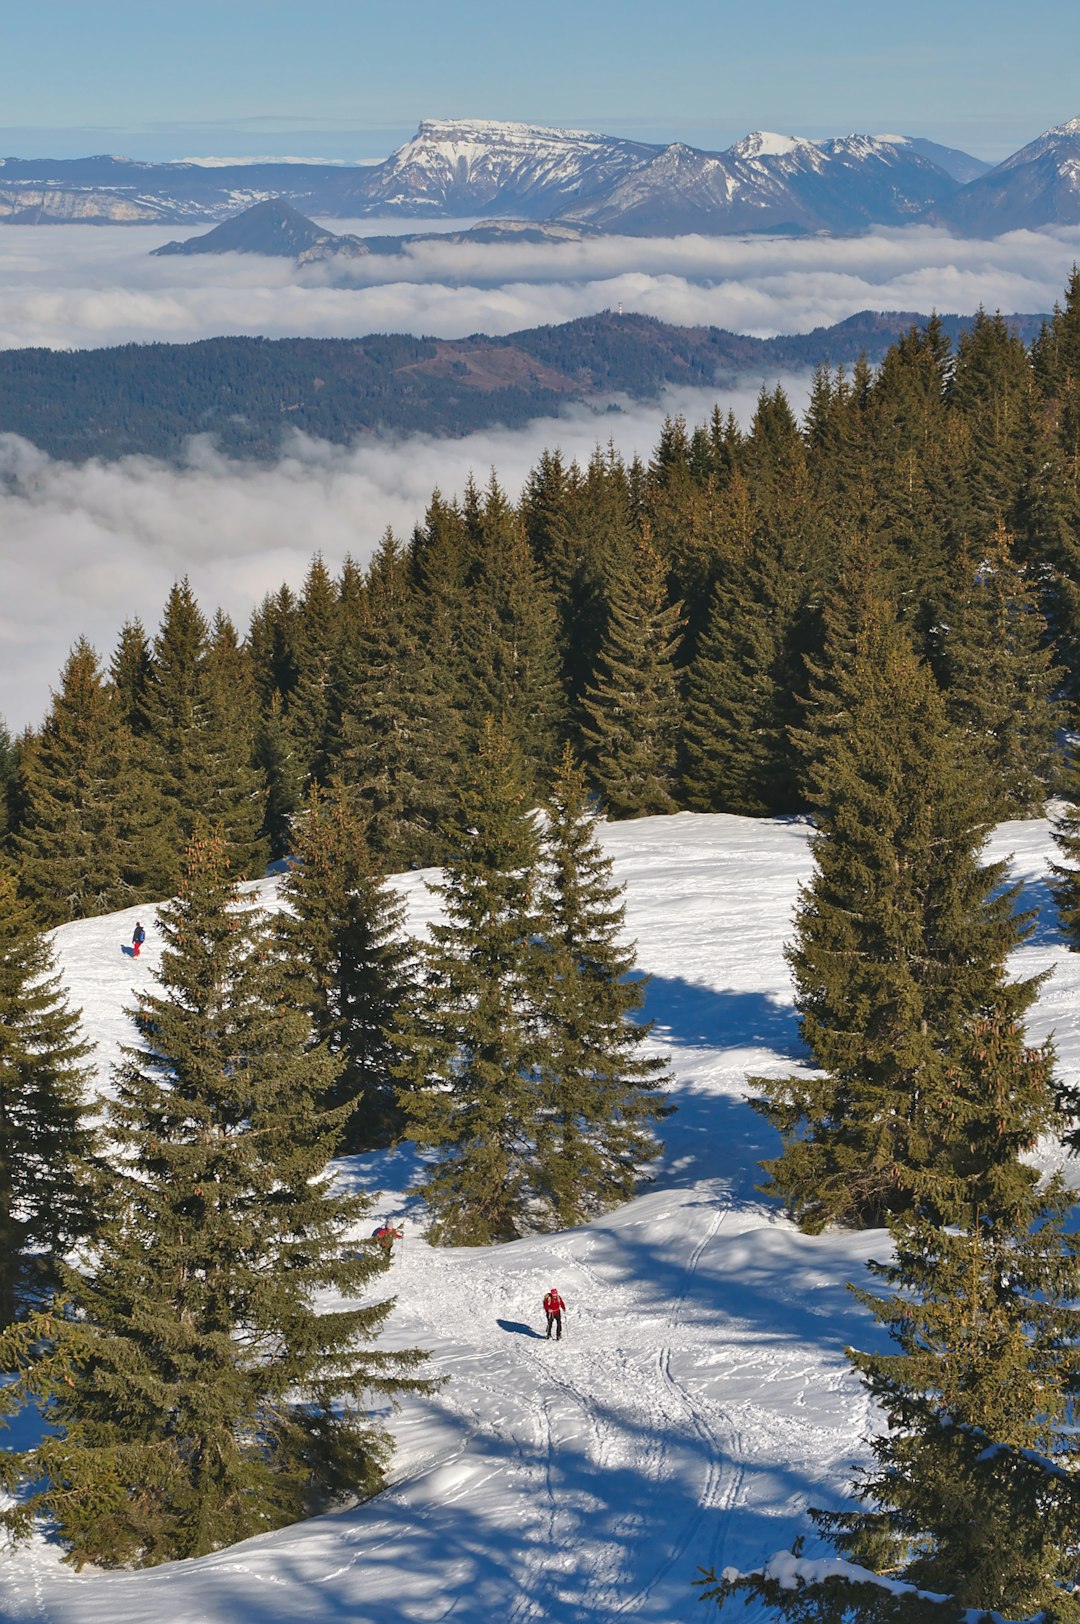 Mountain range photo spot Domaine de ski Nordique du Barioz Parc Naturel Régional du Queyras